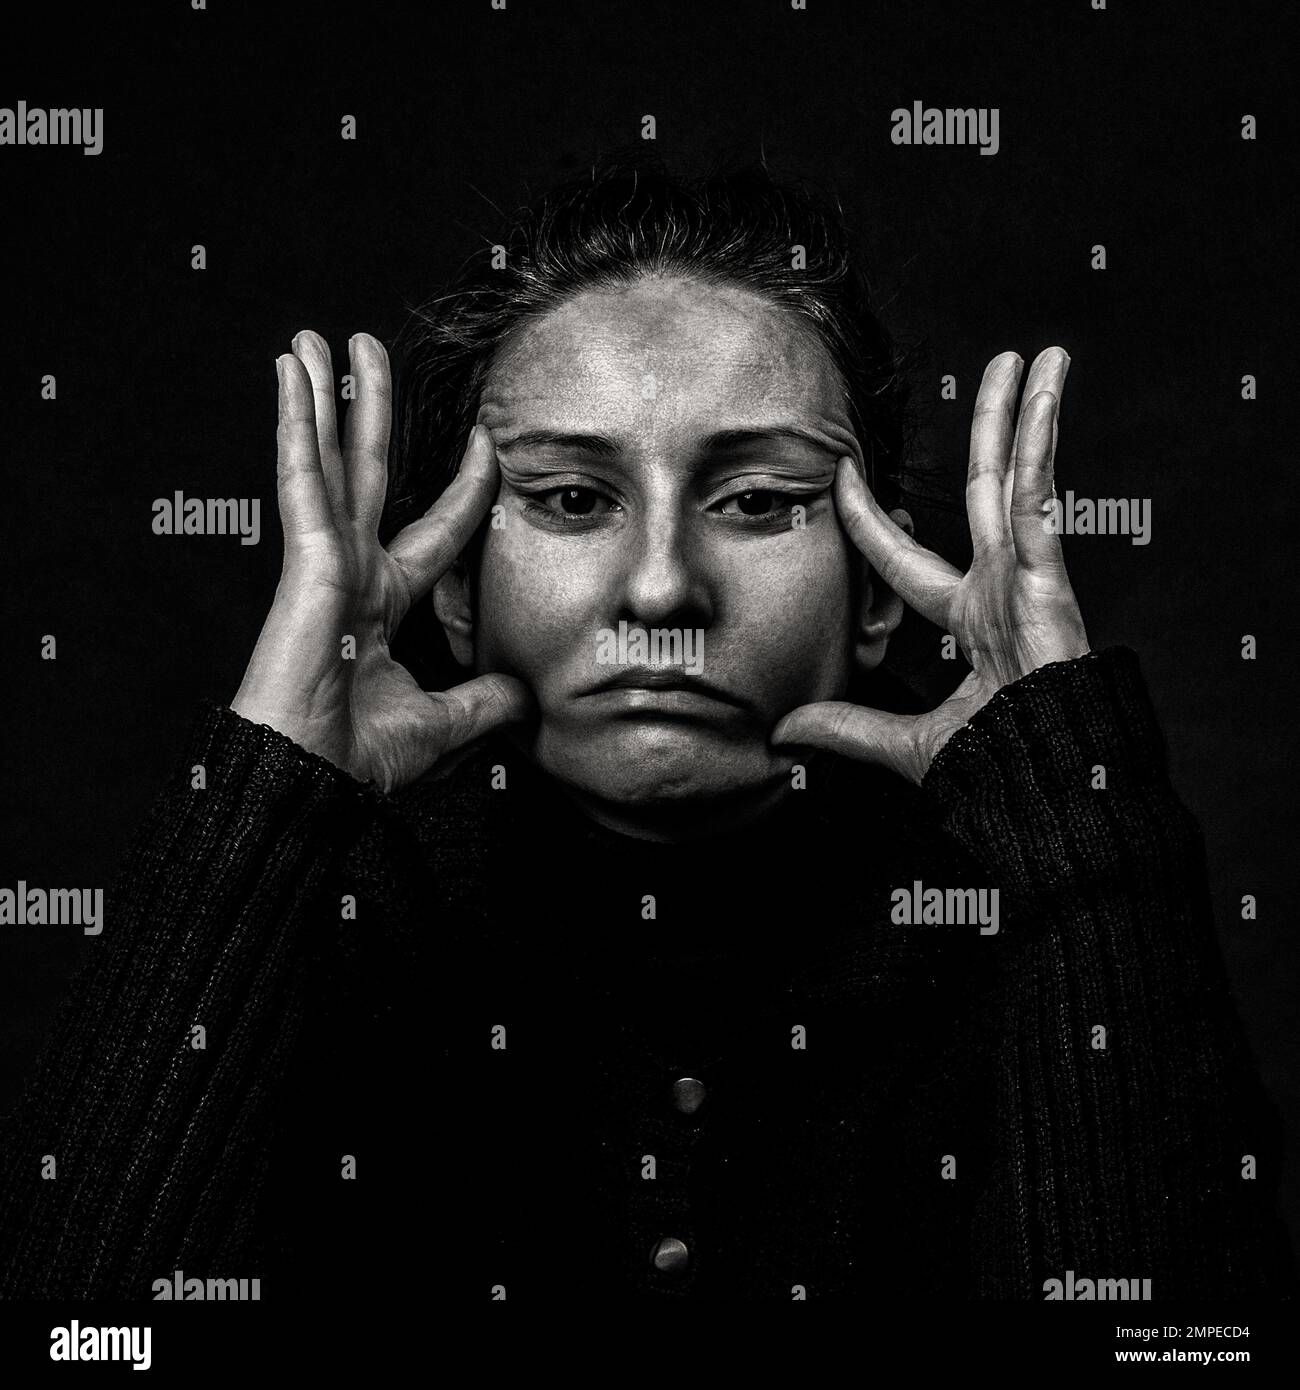 Retrato oscuro conceptual de la mujer que estira la piel de su cara en una mueca fea. Problemas con la piel y las arrugas, demostración contra el plástico sur Foto de stock